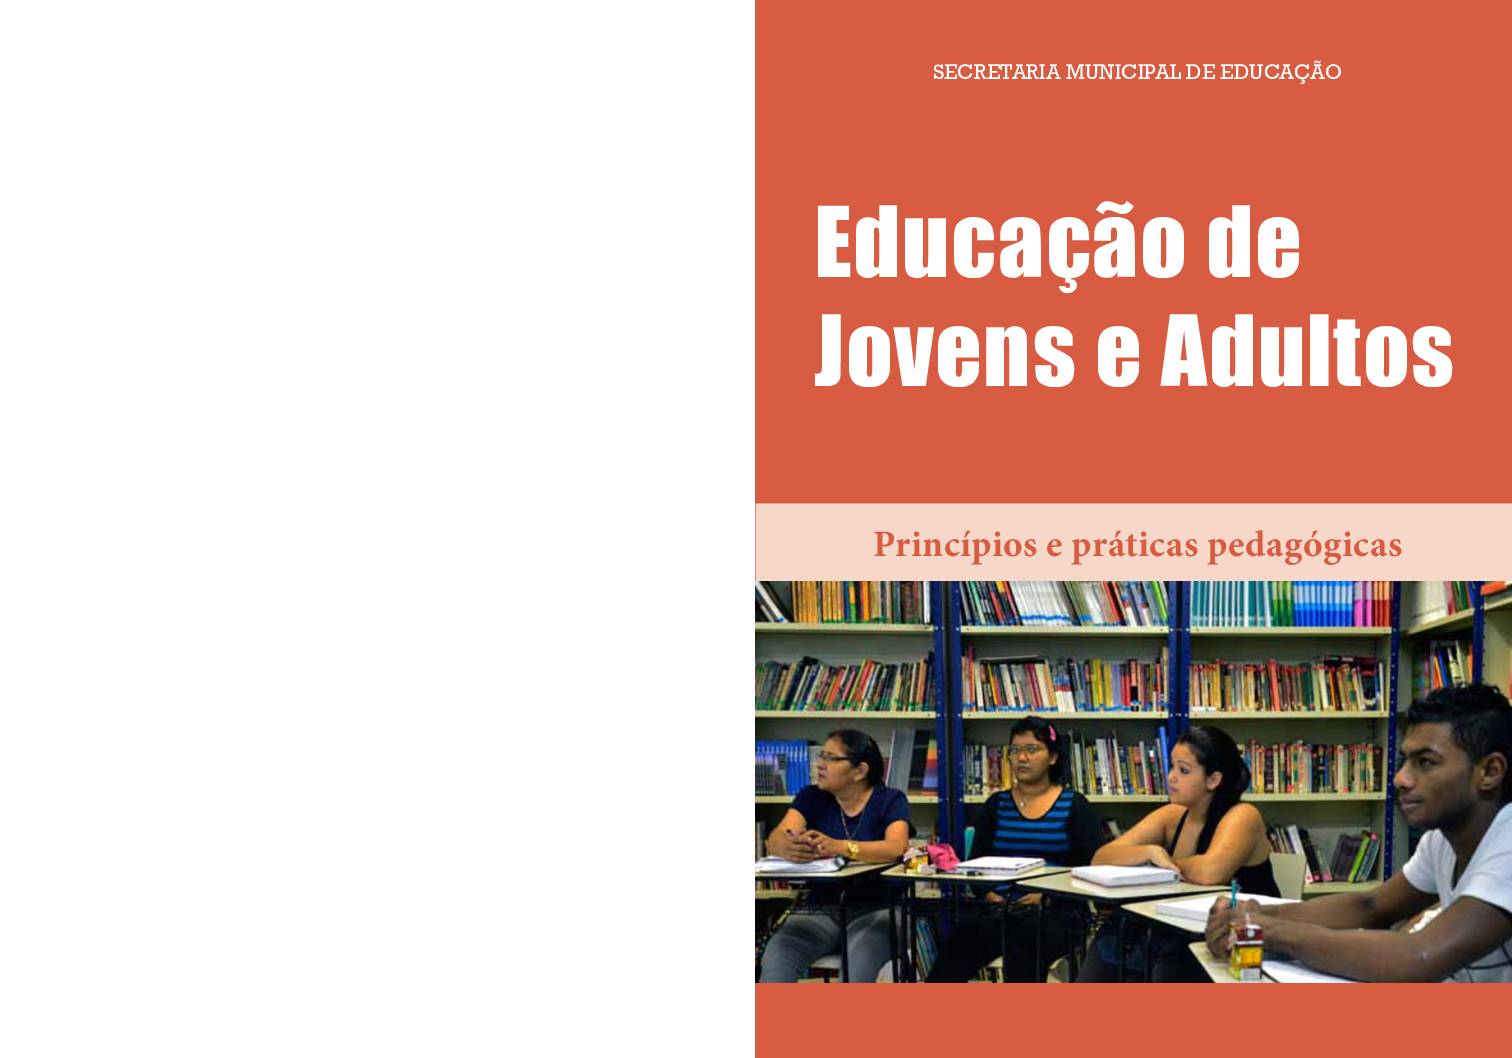 Publicação dedicada ao tema da reorganização da Educação de Jovens e Adultos - EJA, sublinhando a proposição de princípios e práticas para a construção do Projeto Político-Pedagógico.